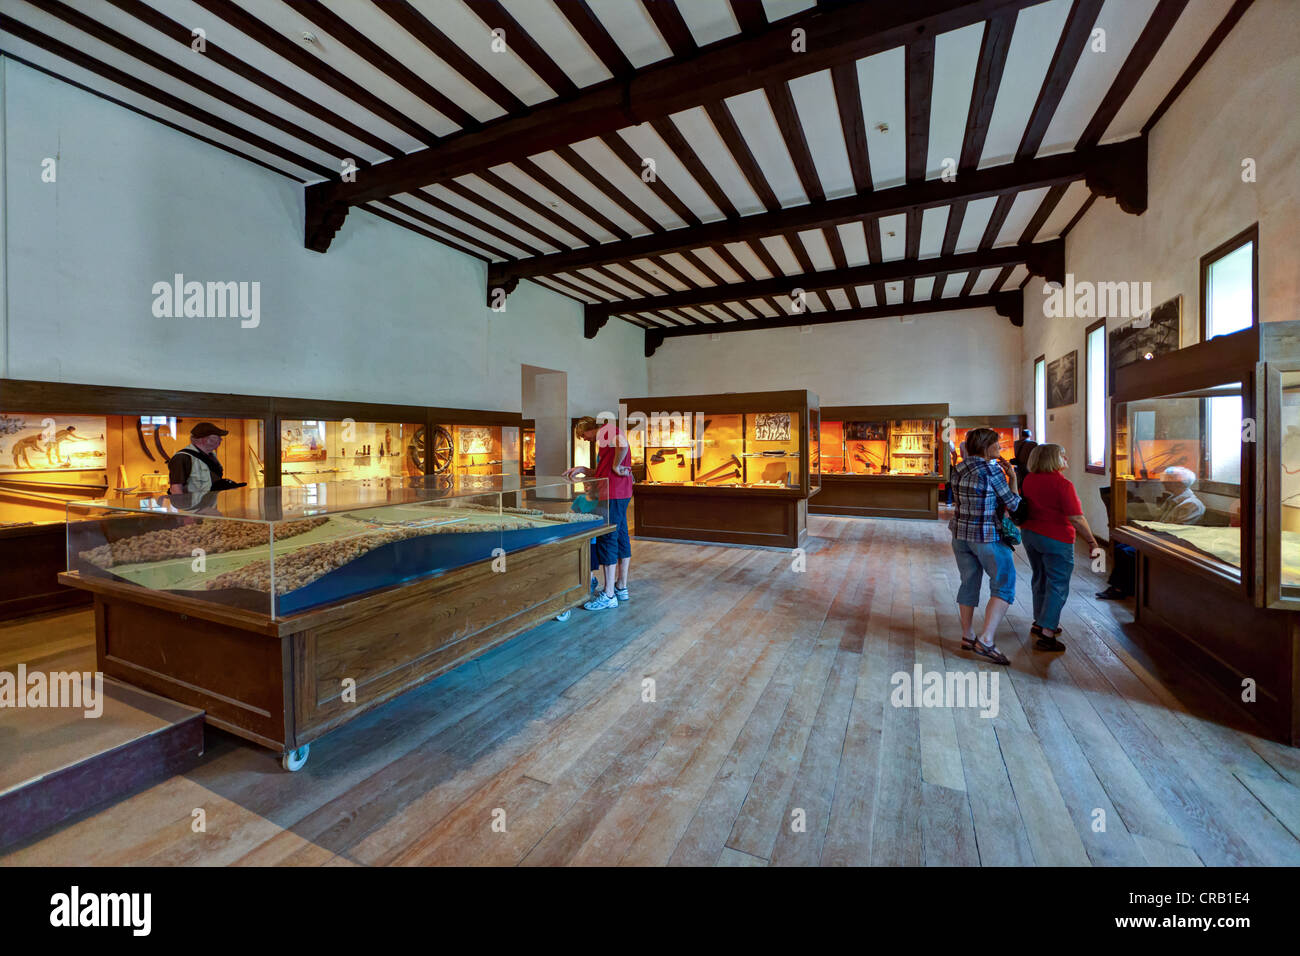 Le musée de fort romain de Saalburg reconstruit, limes, UNESCO World Heritage Site, région de Taunus, Hesse, Germany, Europe Banque D'Images